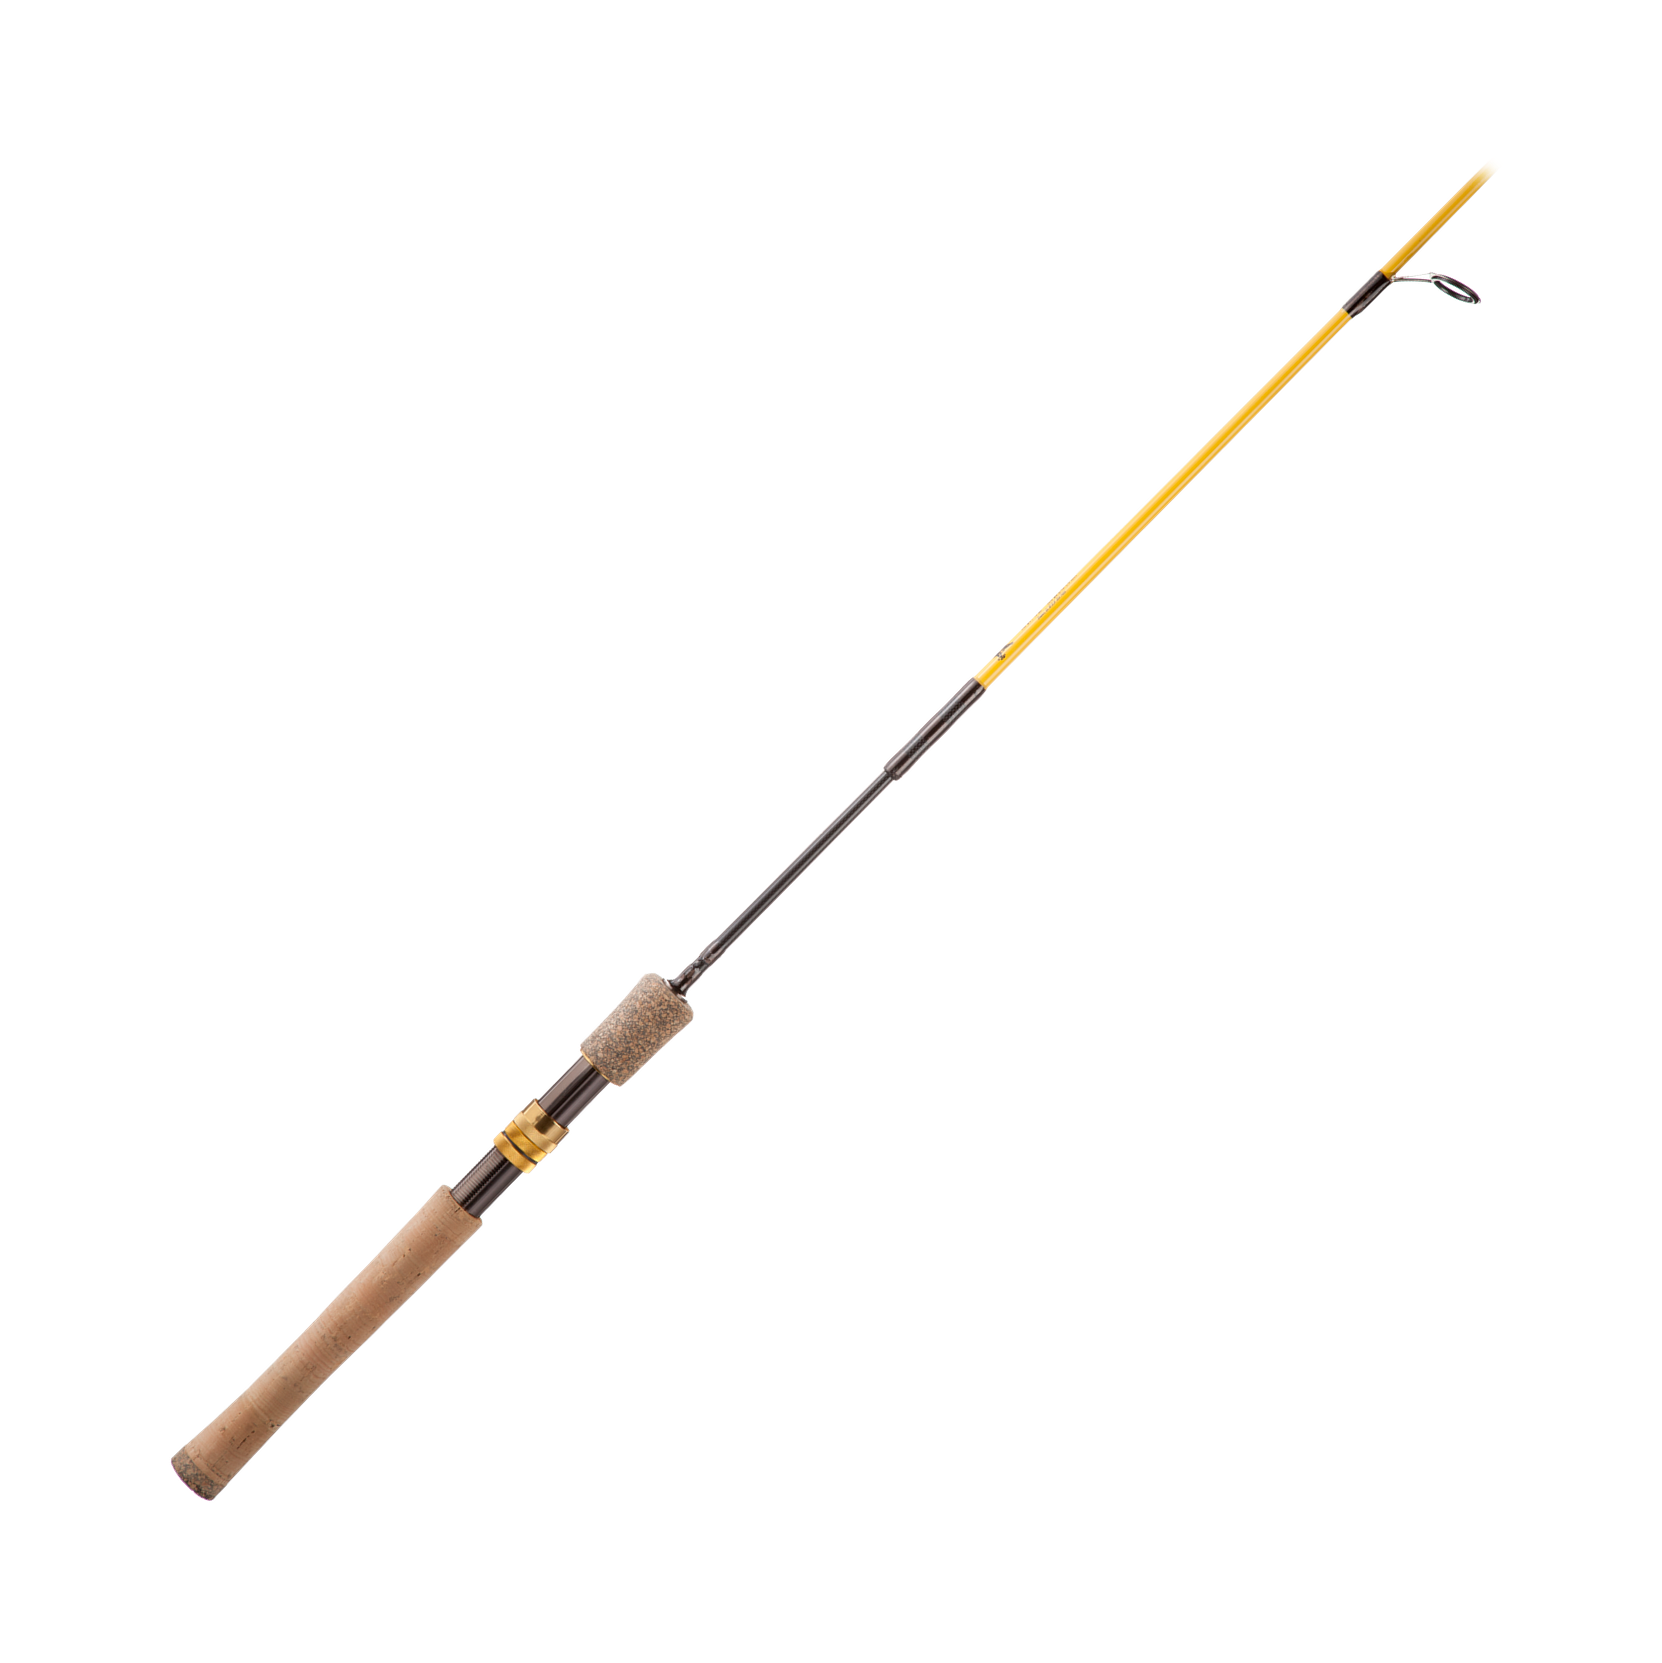 Eagle Claw Trailmaster Medium Spinning Rod, 6-Feet 6-Inch (4 Piece)